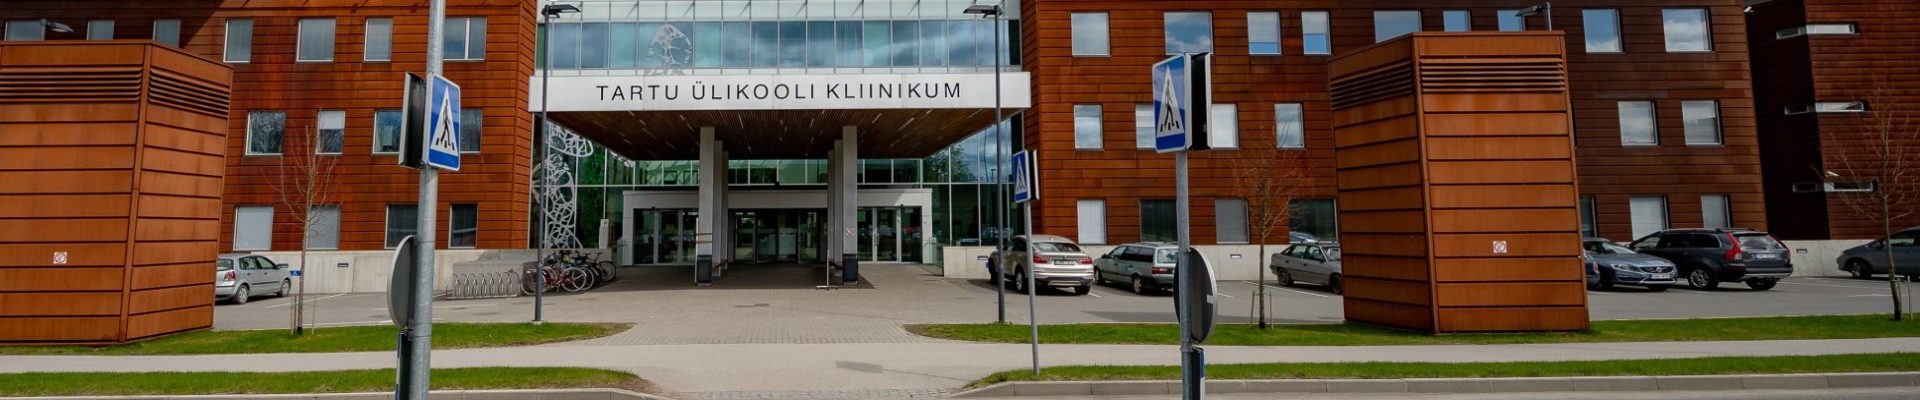 Oleme Eesti ülikoolihaigla, mis pakub kõrgetasemelist ravi, tipptasemel õpet ja teadustööd, muutes patsientide elud tervemaks ja paremaks